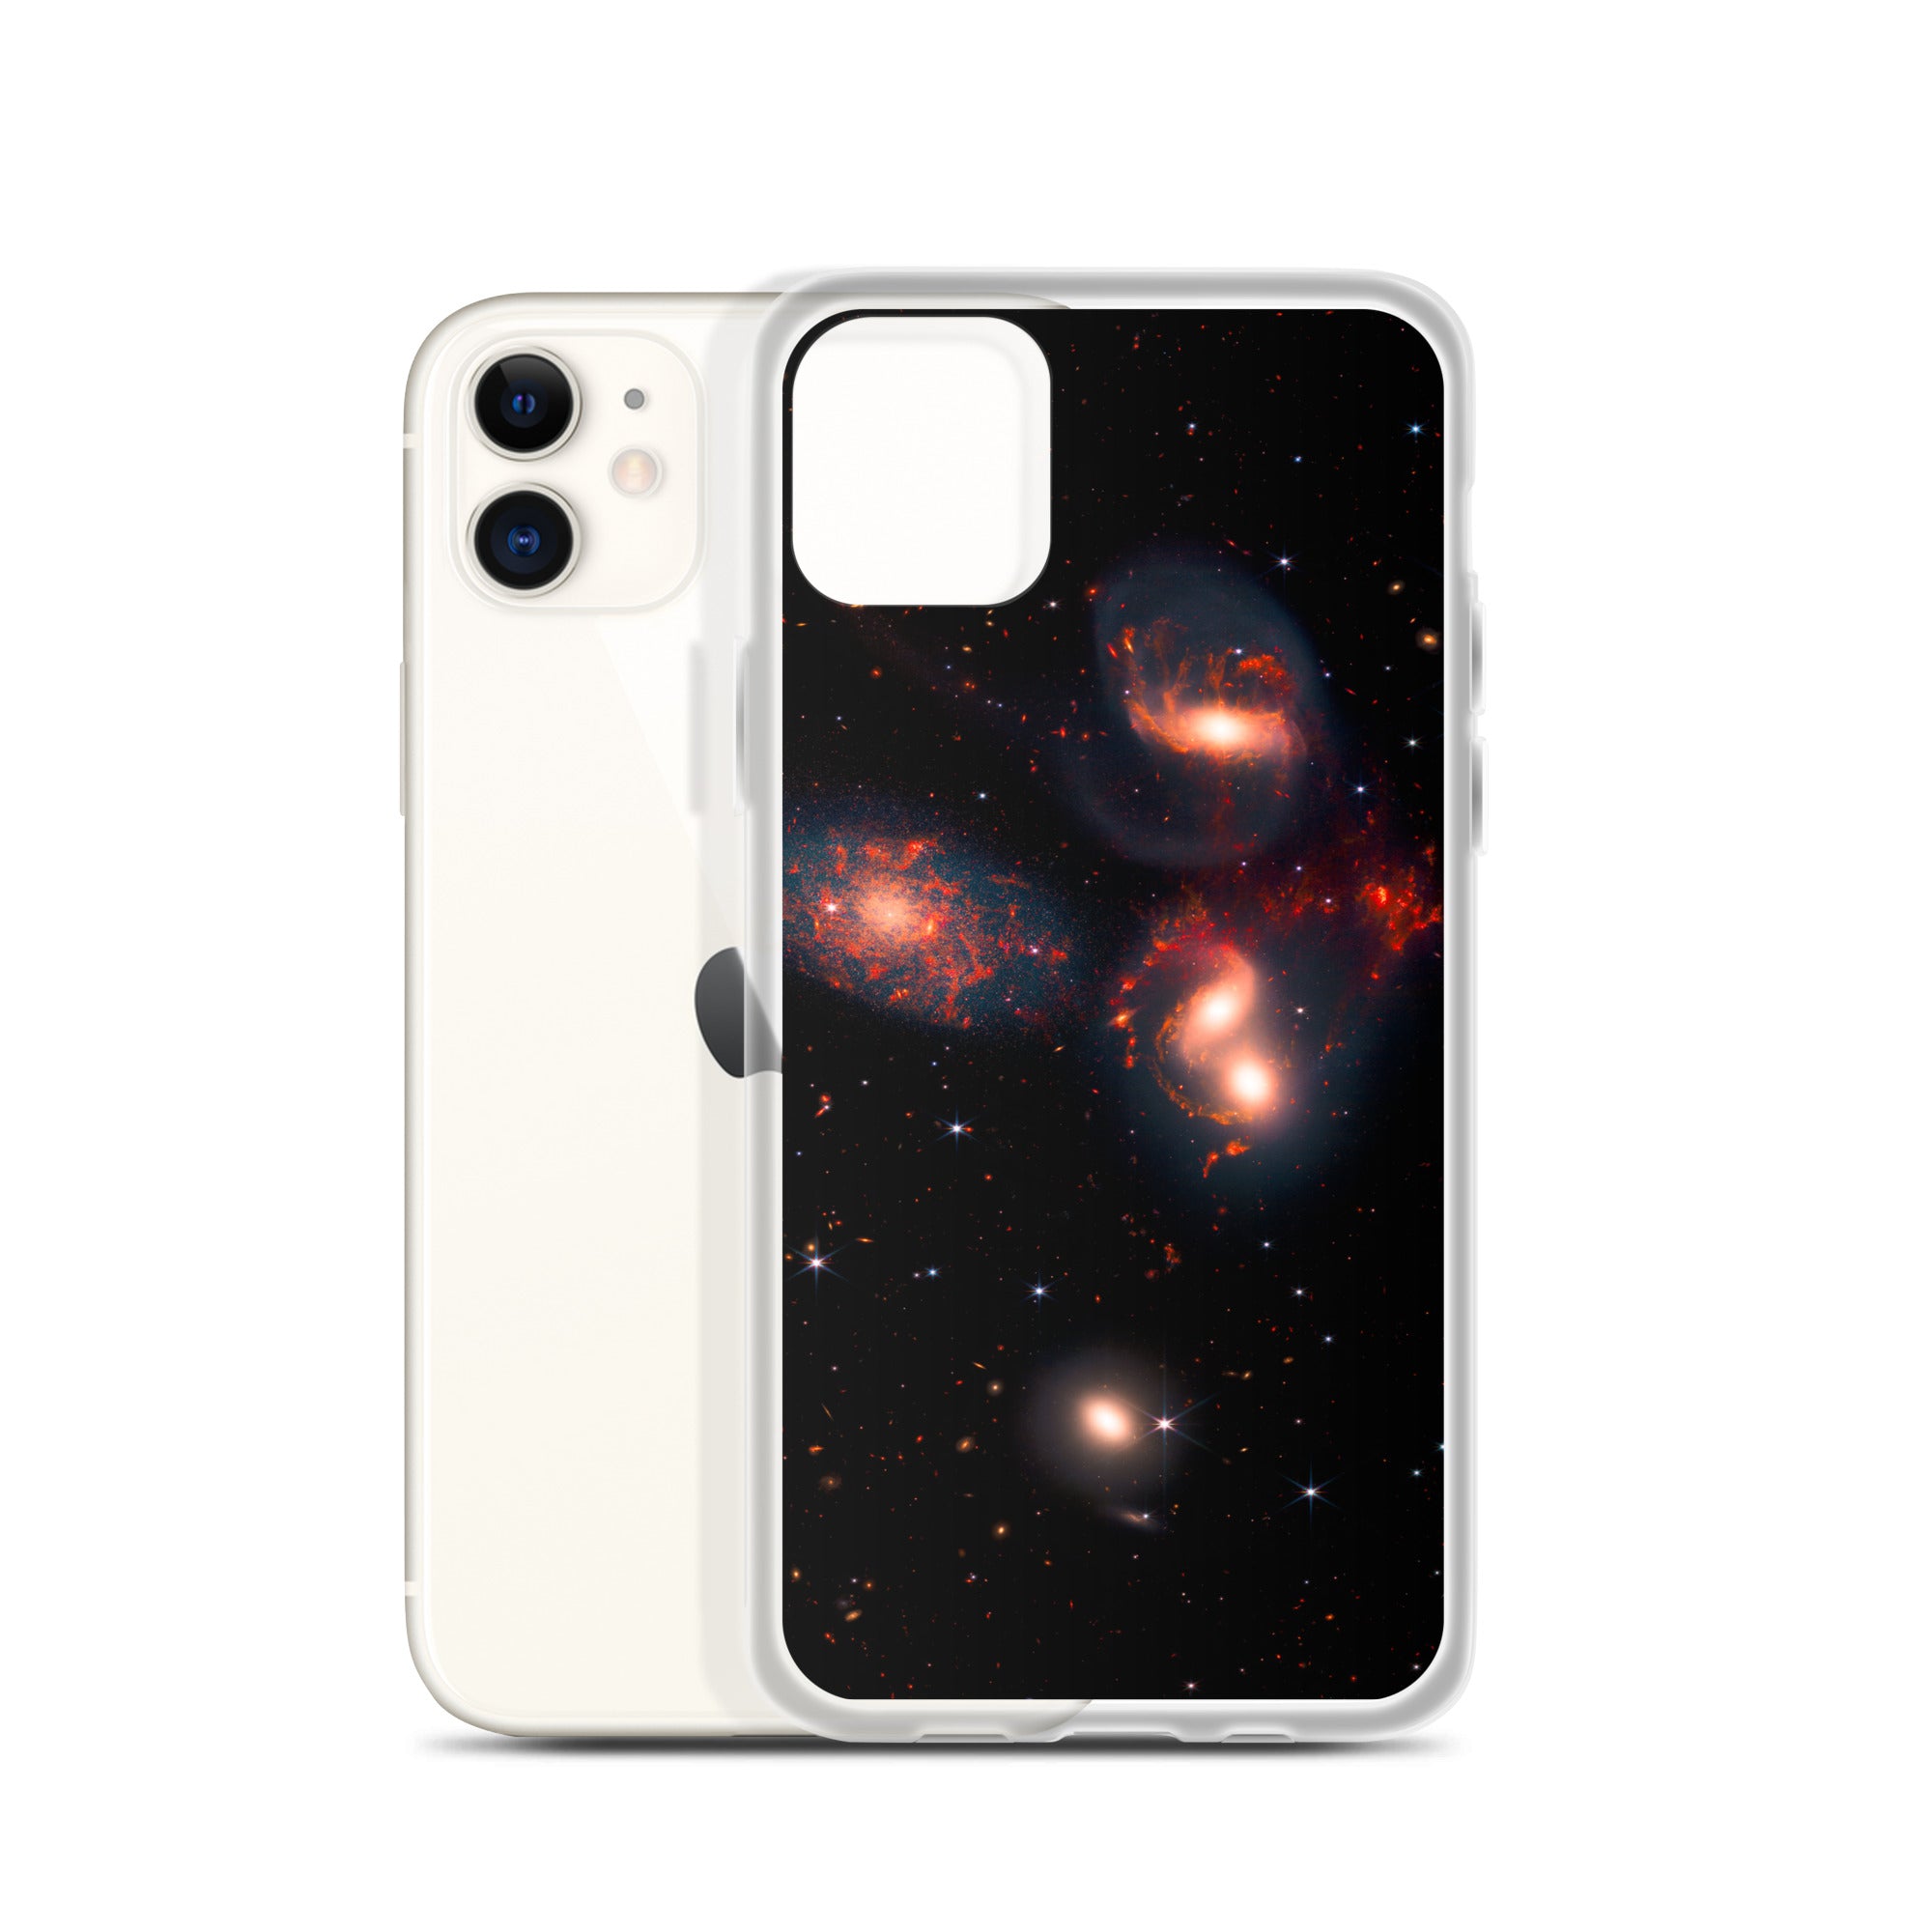 Stephan's Quintet iPhone Case